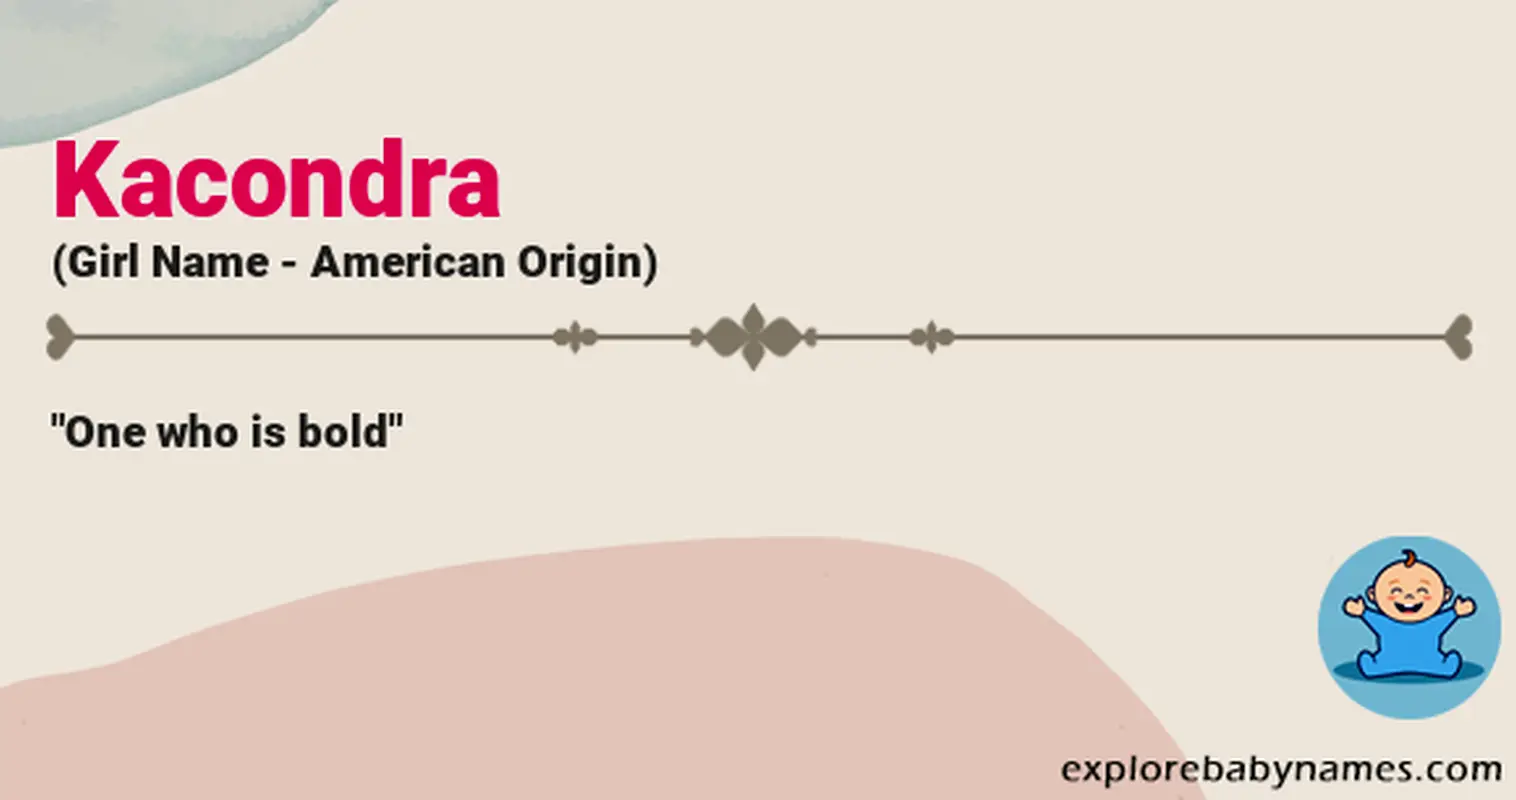 Meaning of Kacondra